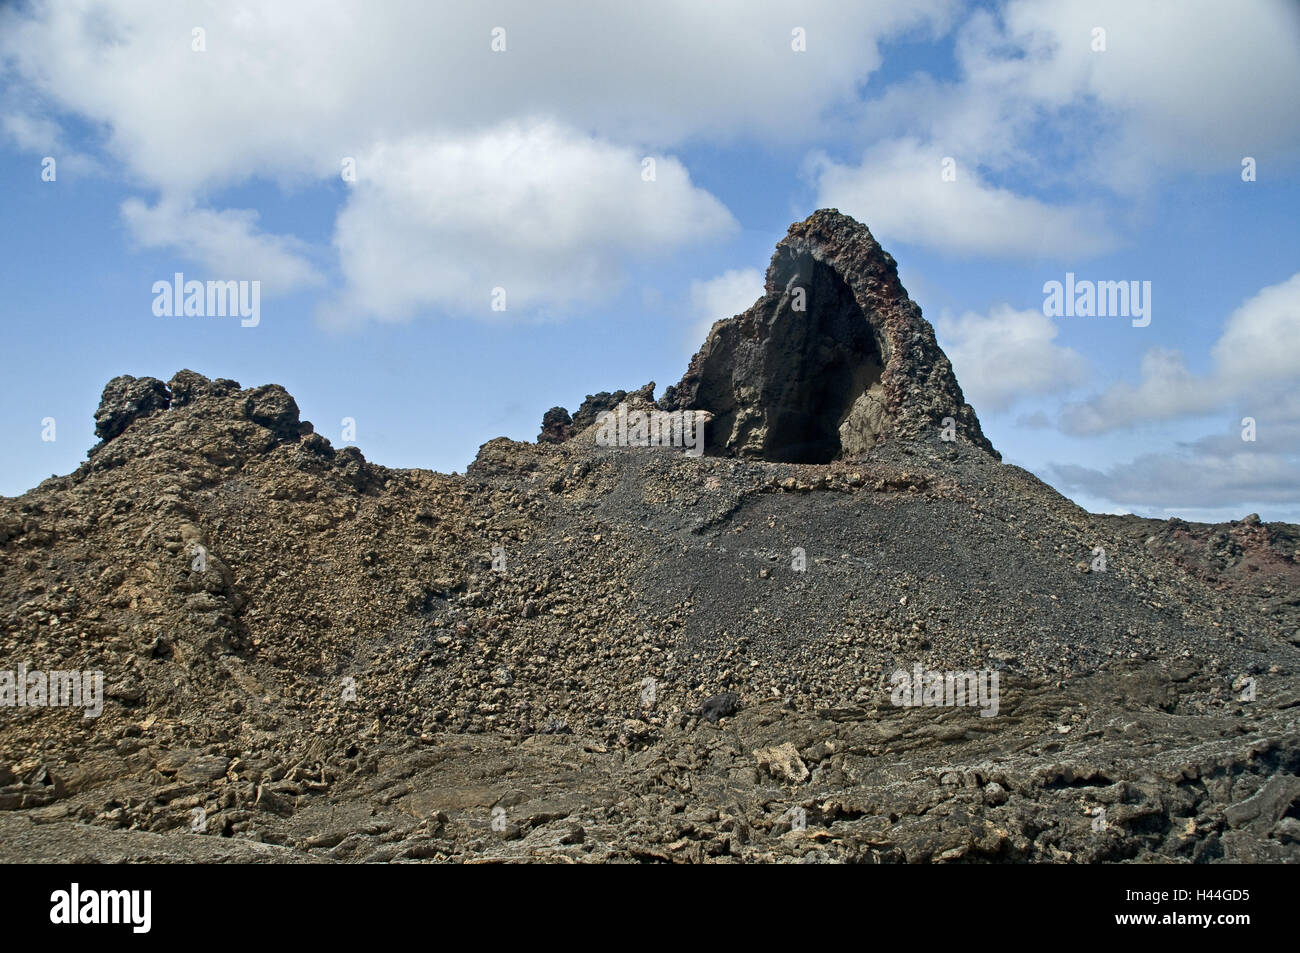 Spain, Canary islands, Lanzarote, Parque Nacional de Timanfaya, volcano scenery, Stock Photo